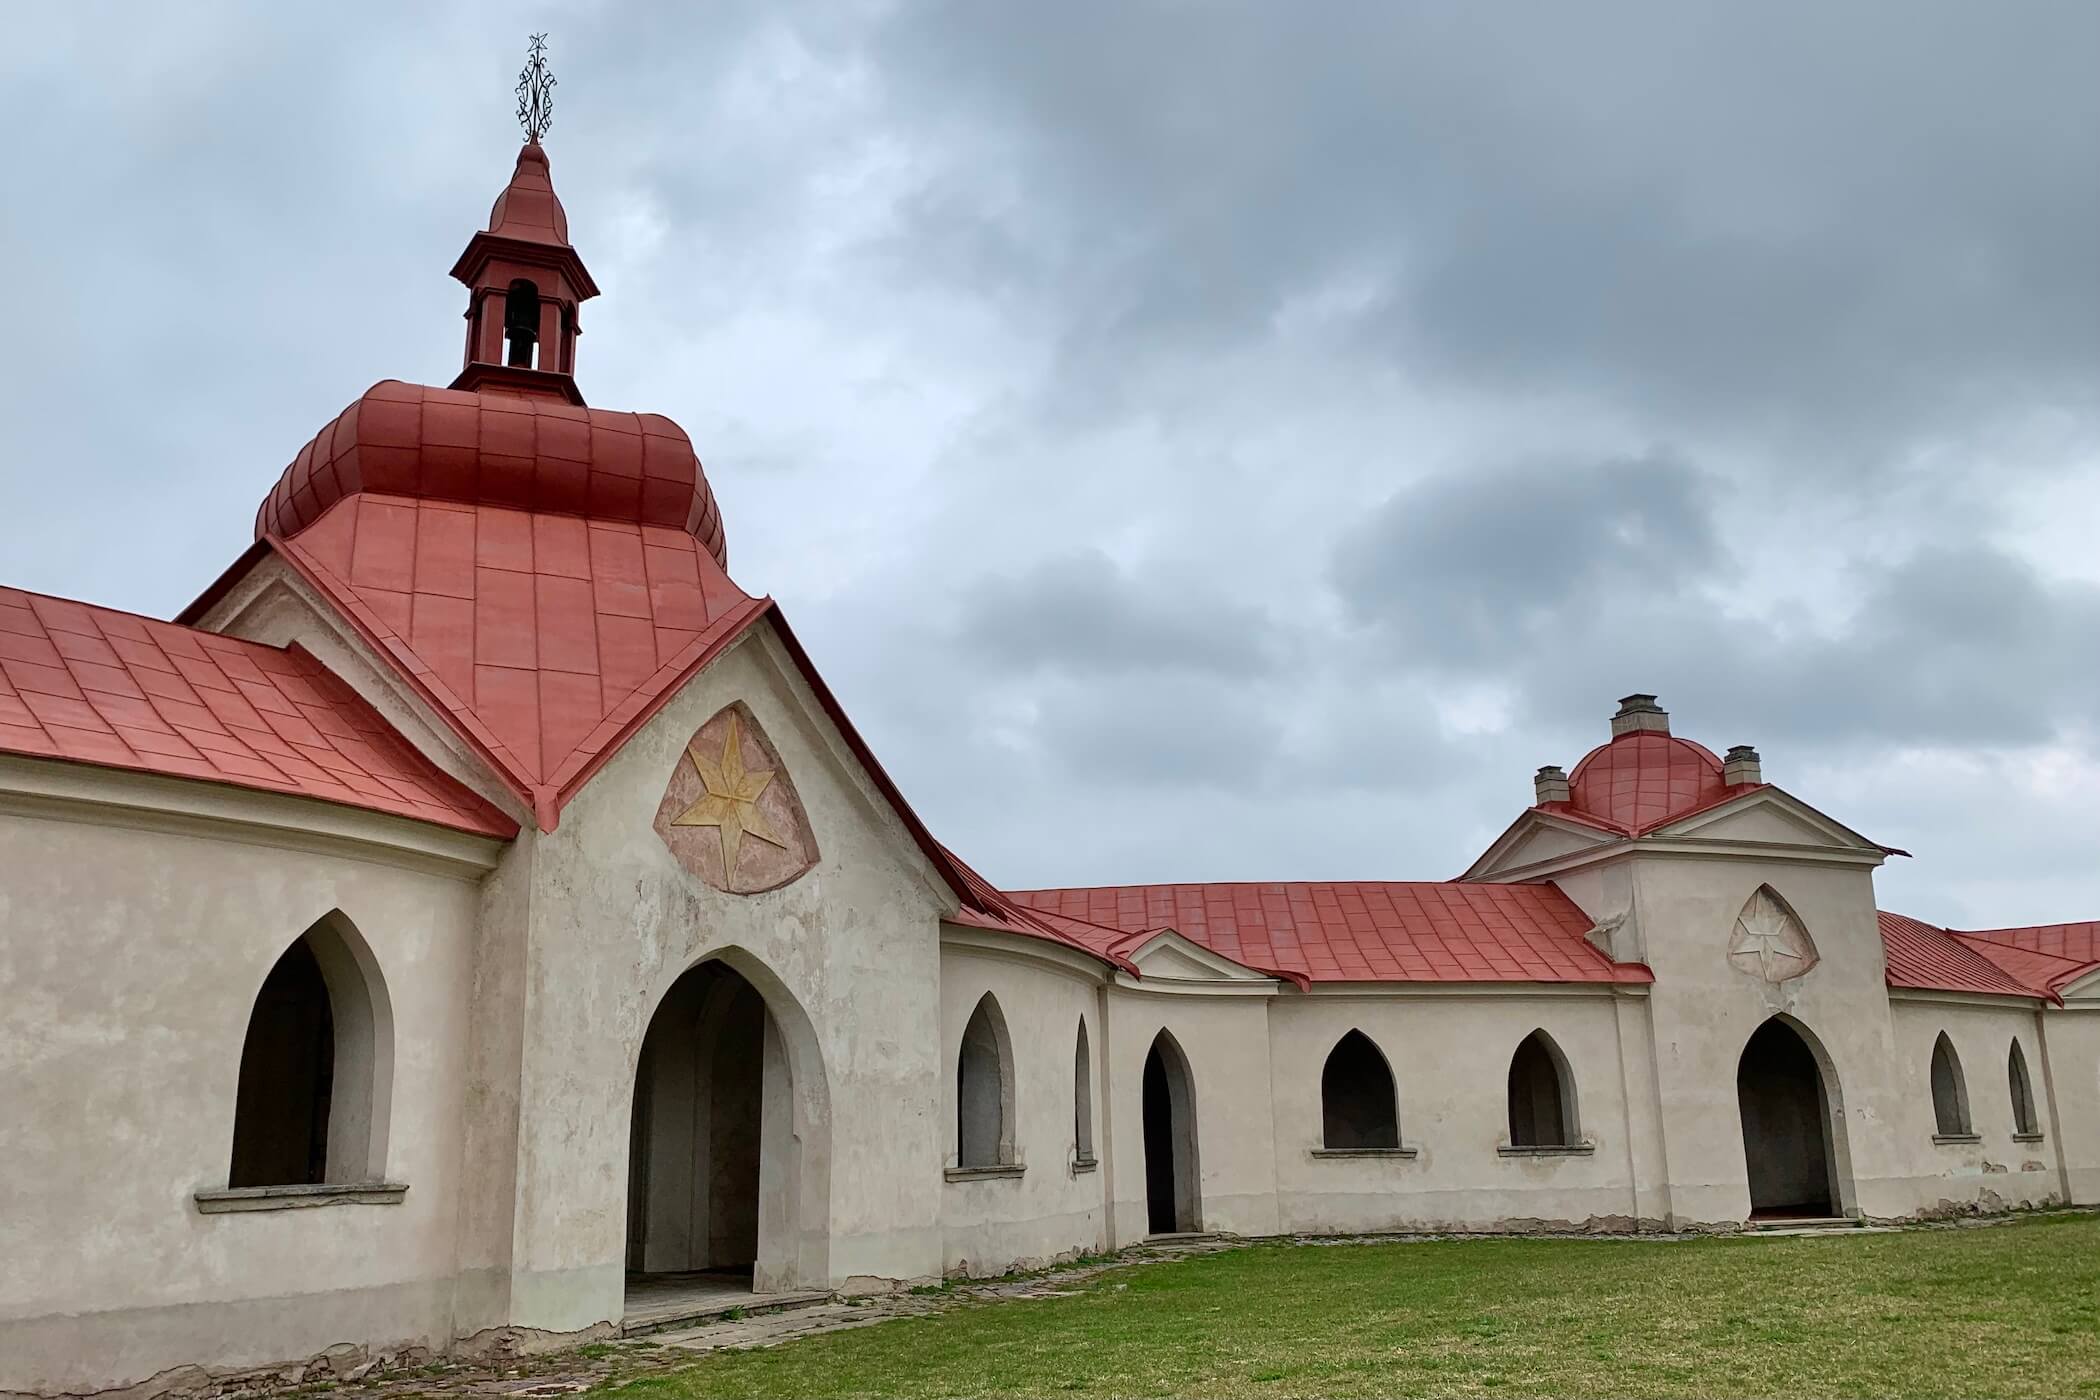 Poutní kostel sv. Jana Nepomuckého na Zelené Hoře